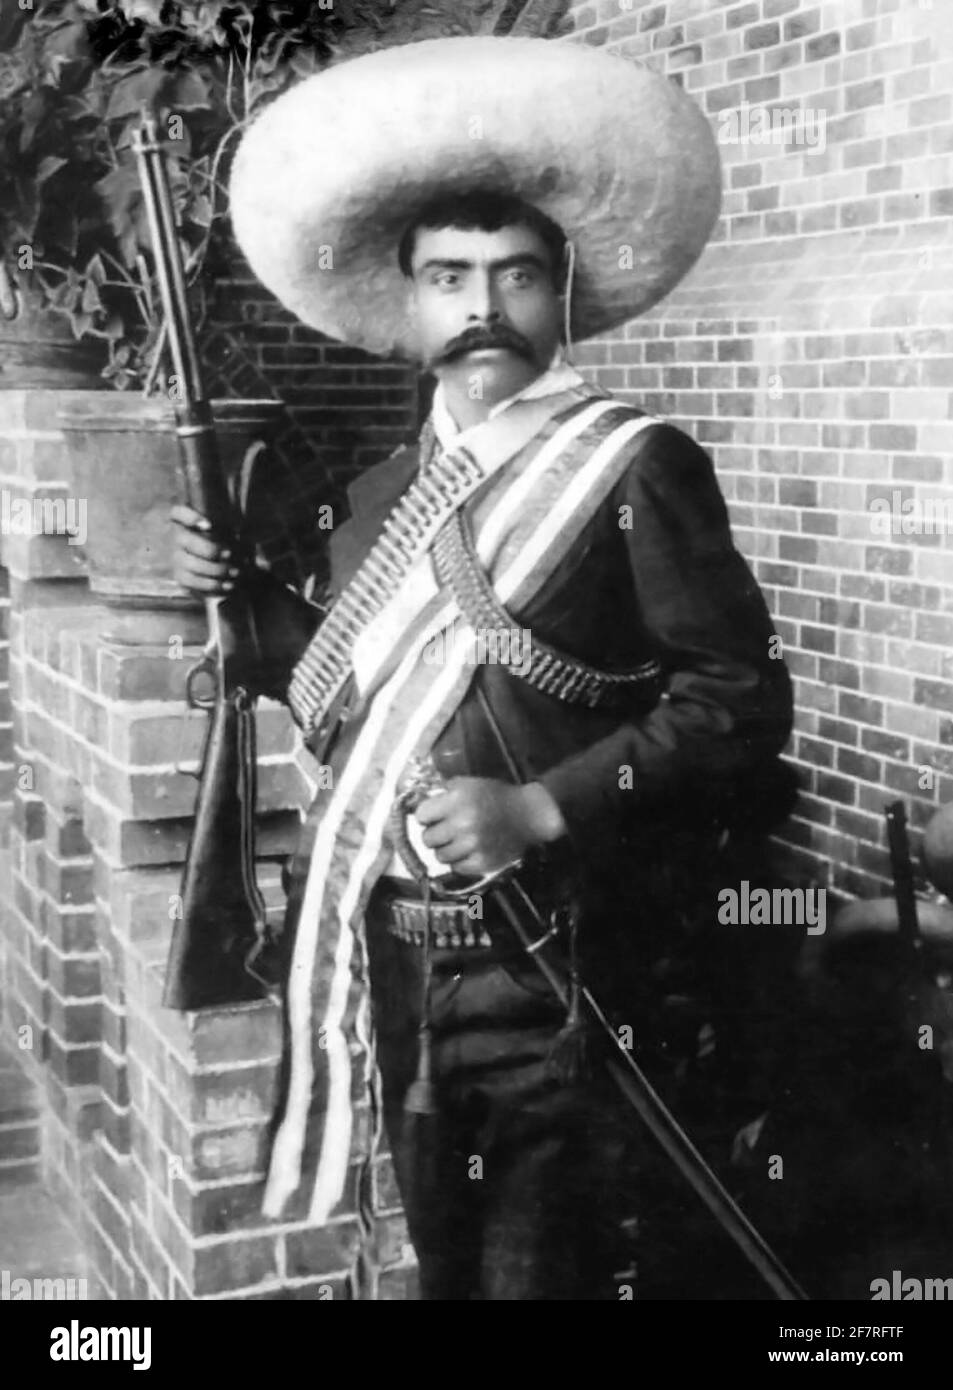 Emiliano Zapata. Portrait du général révolutionnaire mexicain Emiliano Zapata Salazar (1879-1919) pendant la Révolution mexicaine, bain News Service, 1911 Banque D'Images